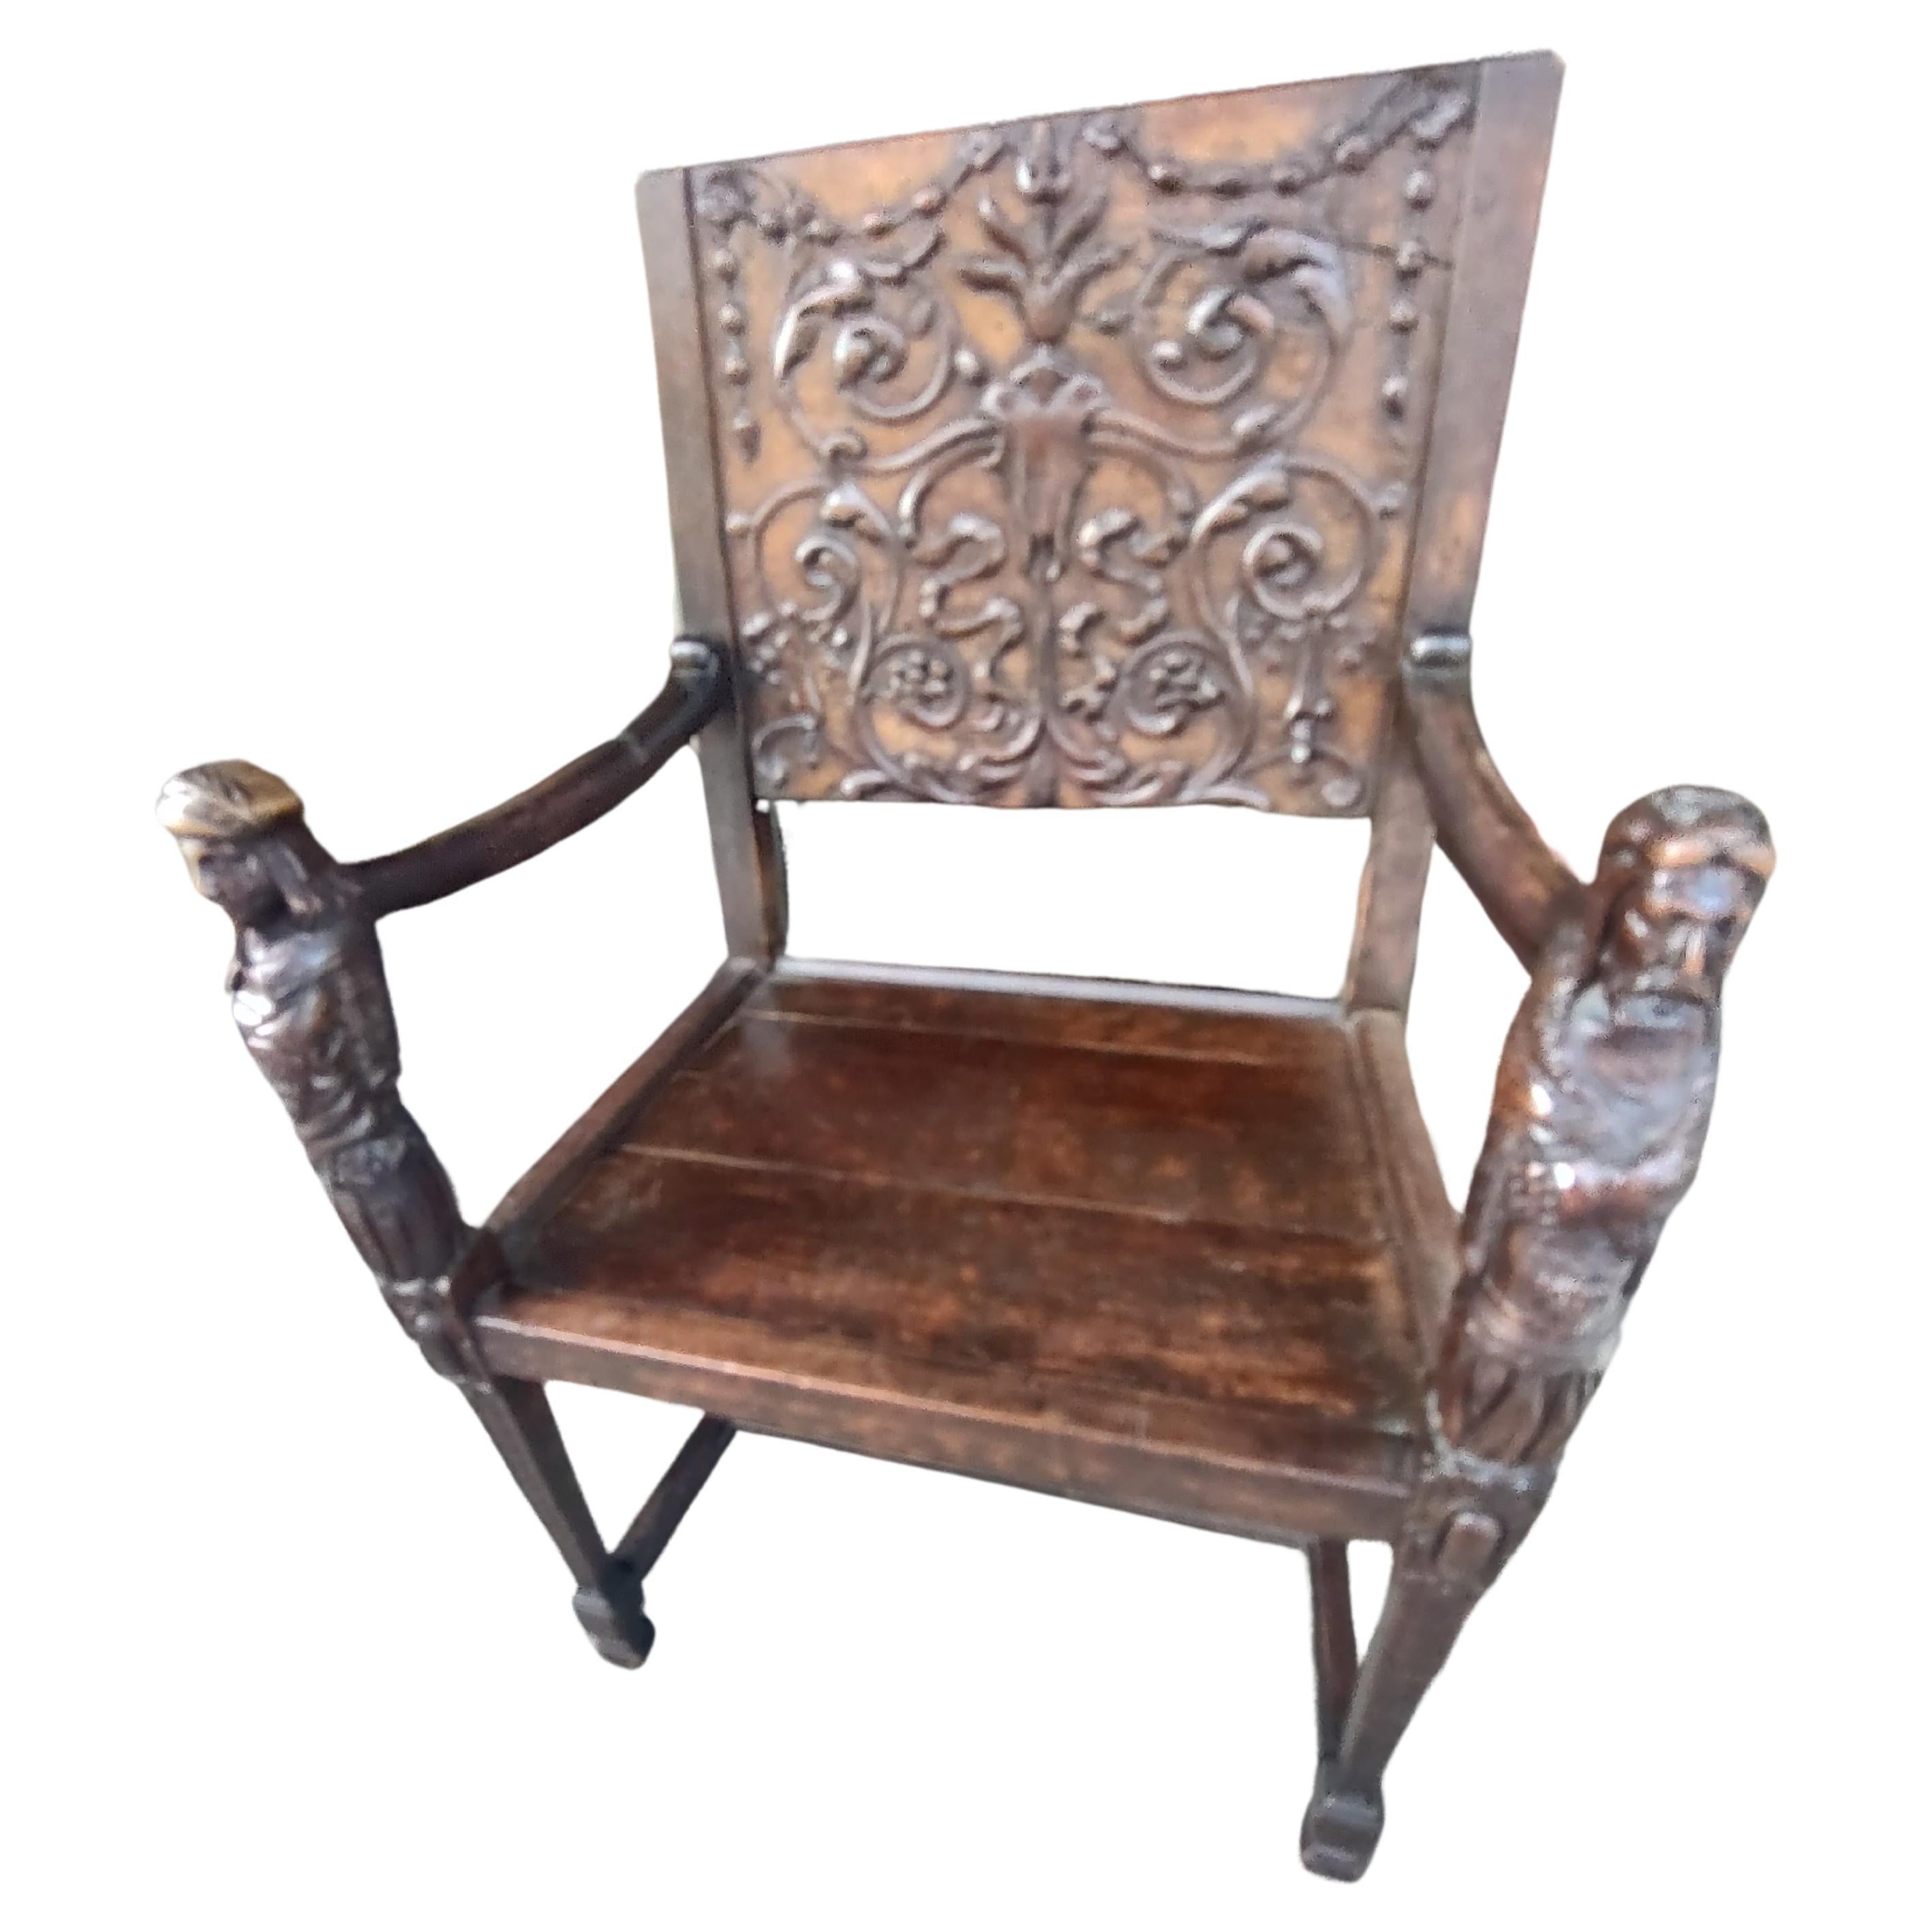 Handgeschnitzter italienischer Renaissance-Sessel aus dem frühen 18. Jahrhundert mit Figuren